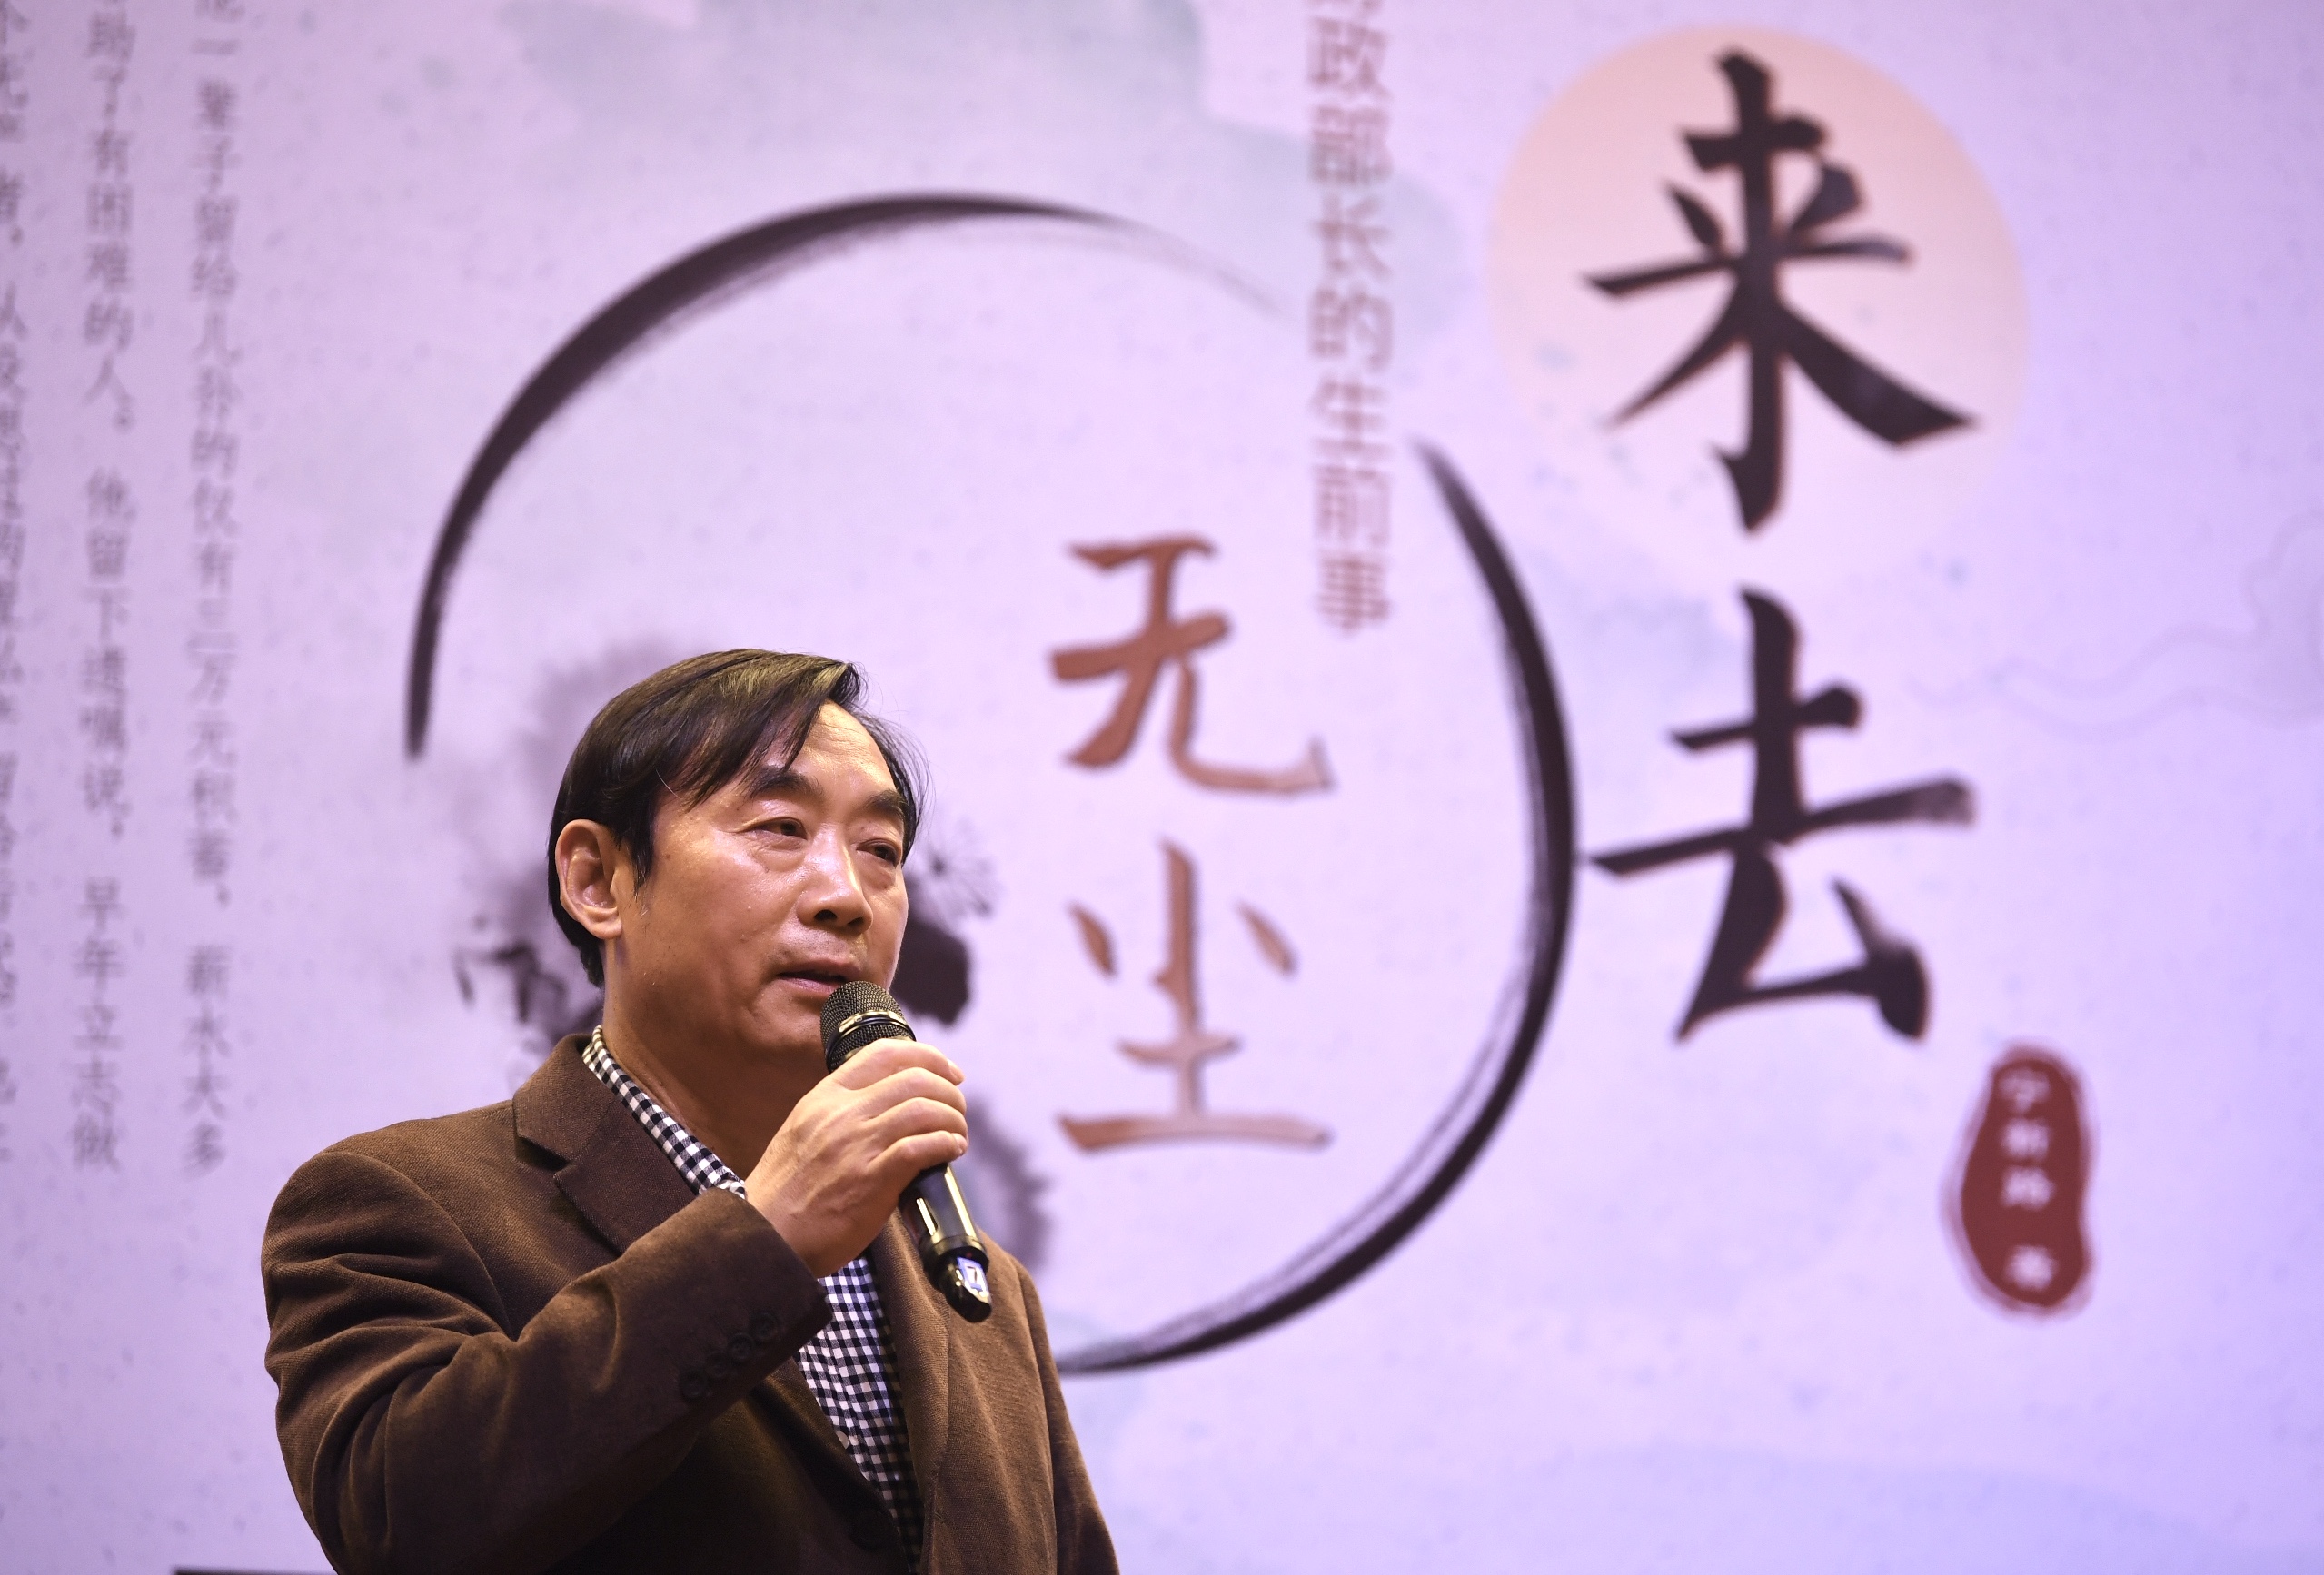 财政部长吴波的故事首次搬上舞台，《来去无尘》月底上演 - 娱乐 - 新京报网